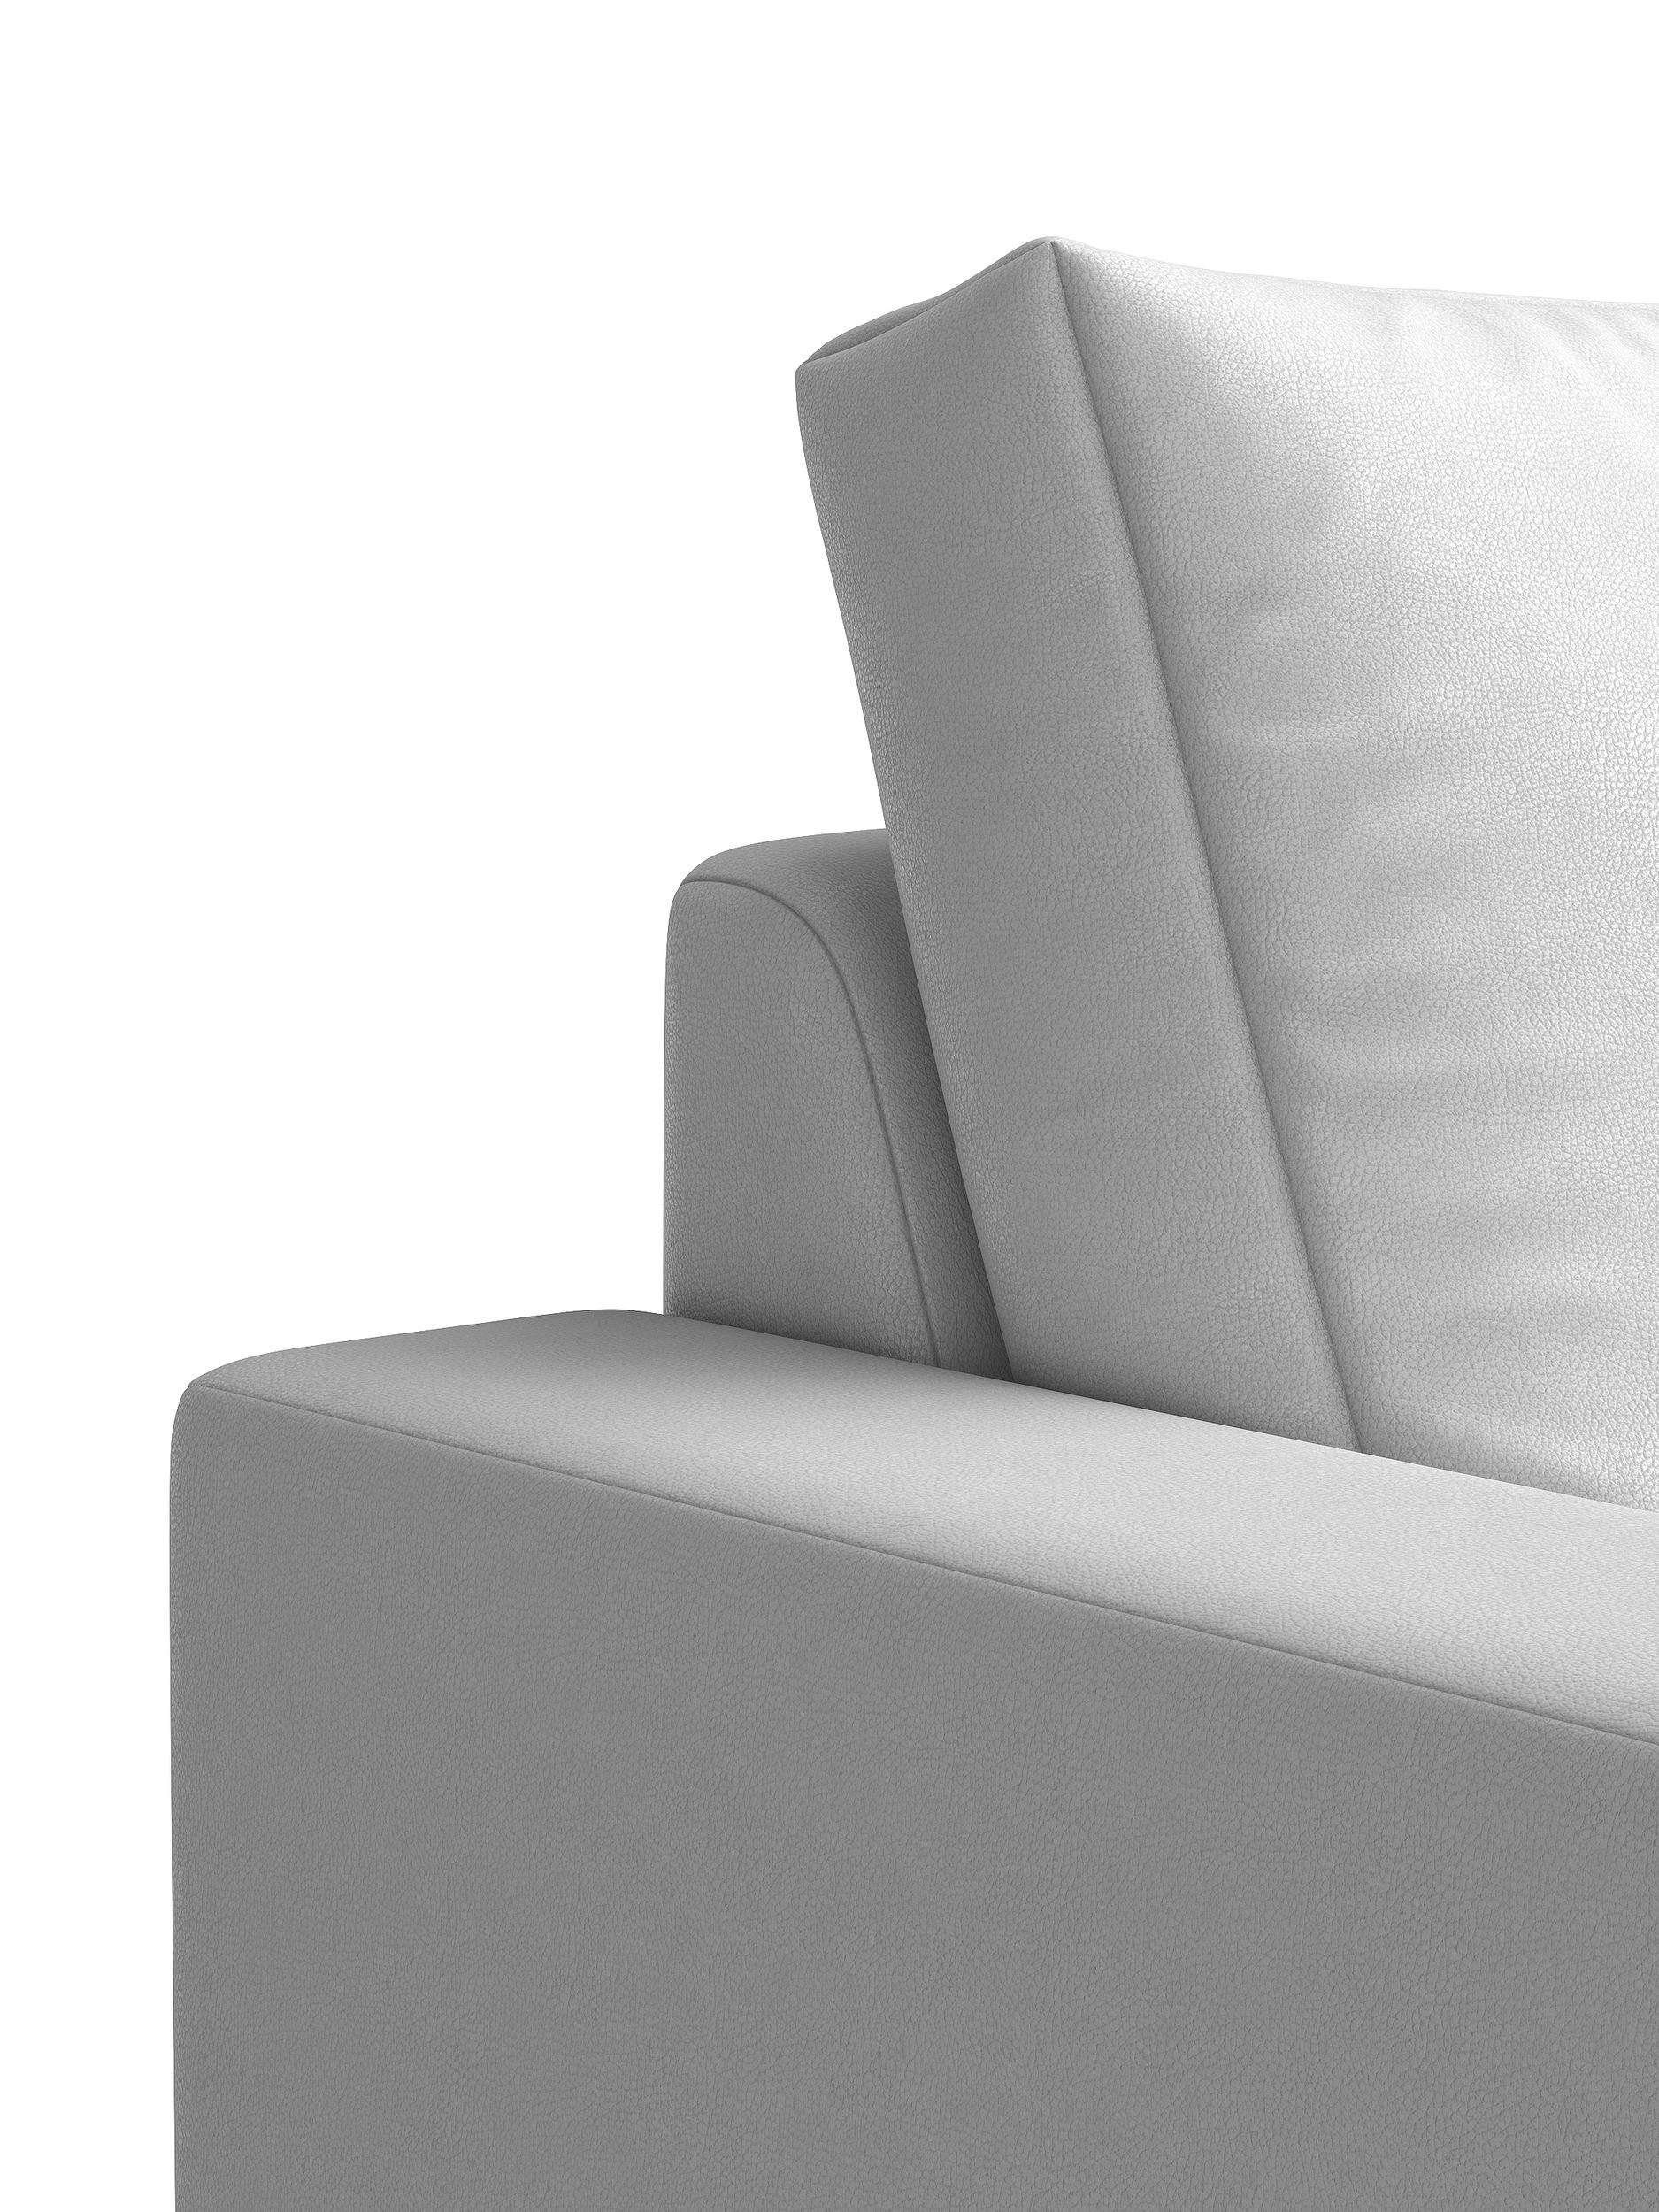 Modern Sofa, frei Europa 3-Sitzer, stellbar, Ari, Sitzkomfort, Stylefy in und Design, mit Raum 3-Sitzer im Rückenlehne, Armlehnen made